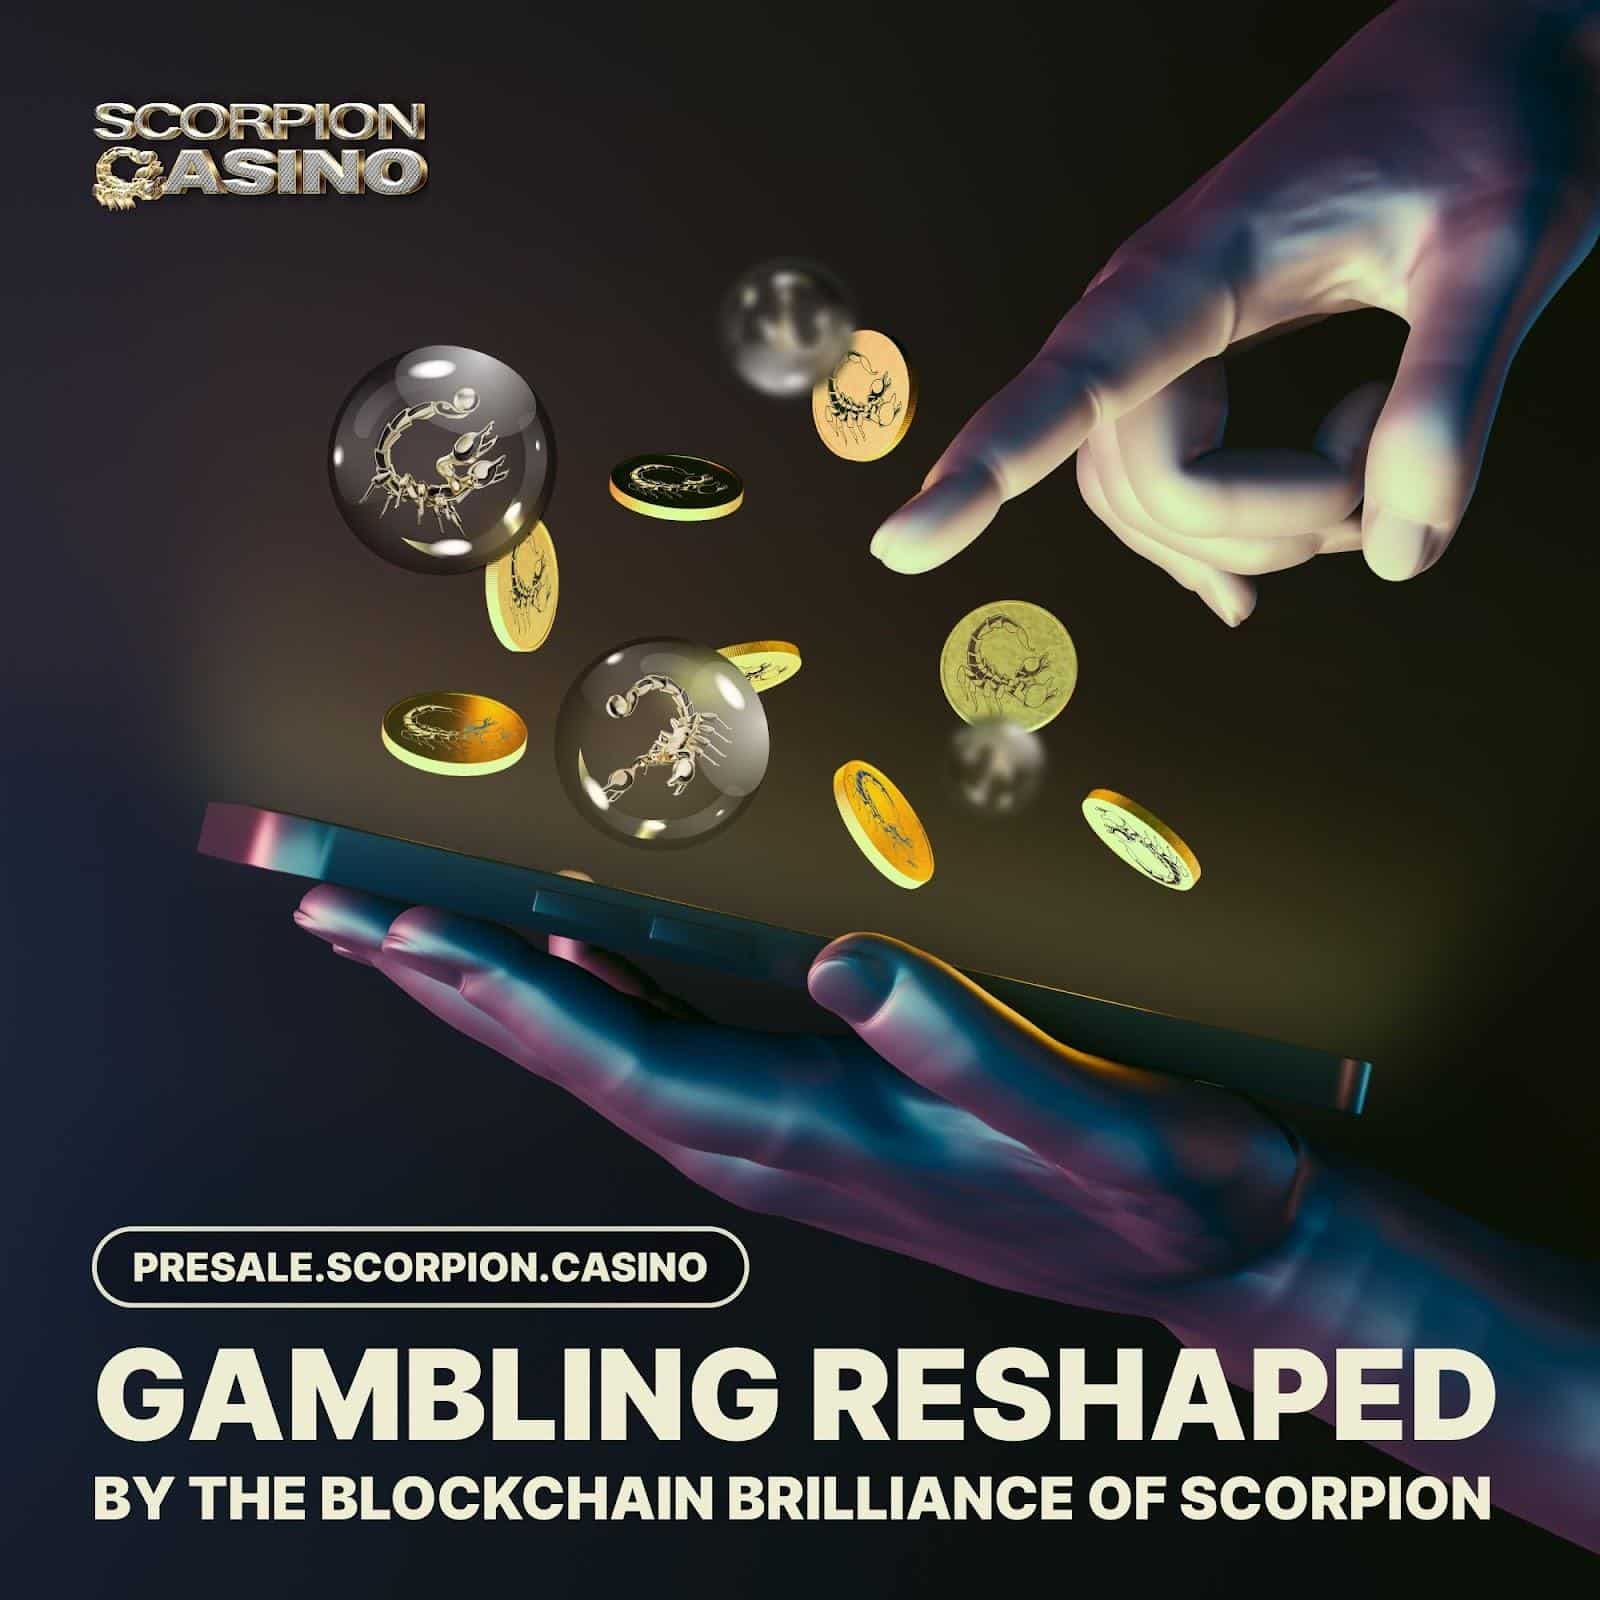 Investidores de Solana, Cardano e Scorpion Casino aguardam um abril de alta